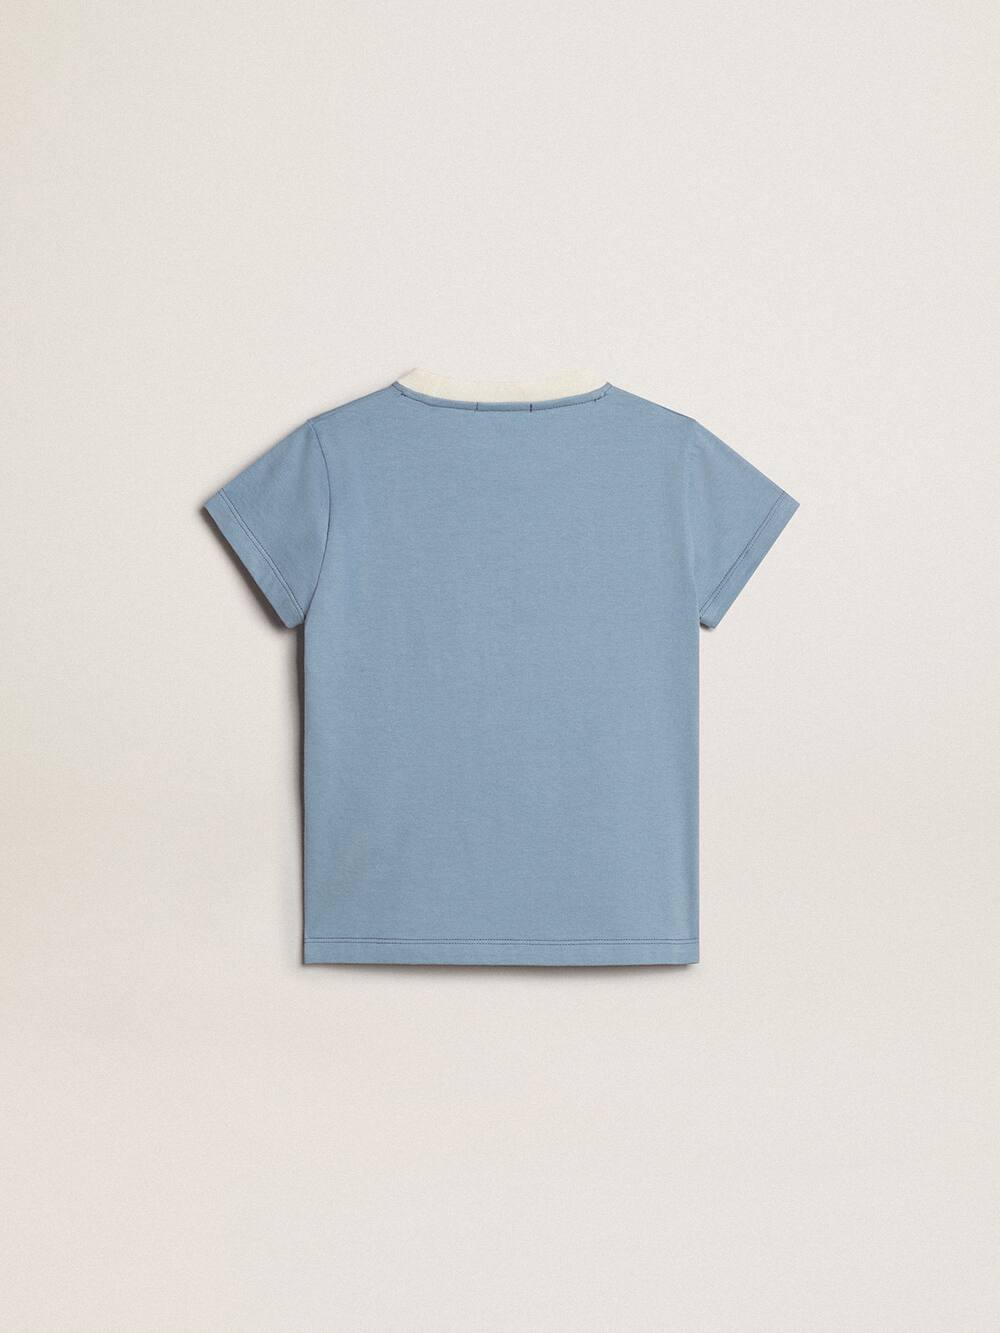 Golden Goose - T-shirt pour fille en coton bleu clair avec imprimé et cristaux in 